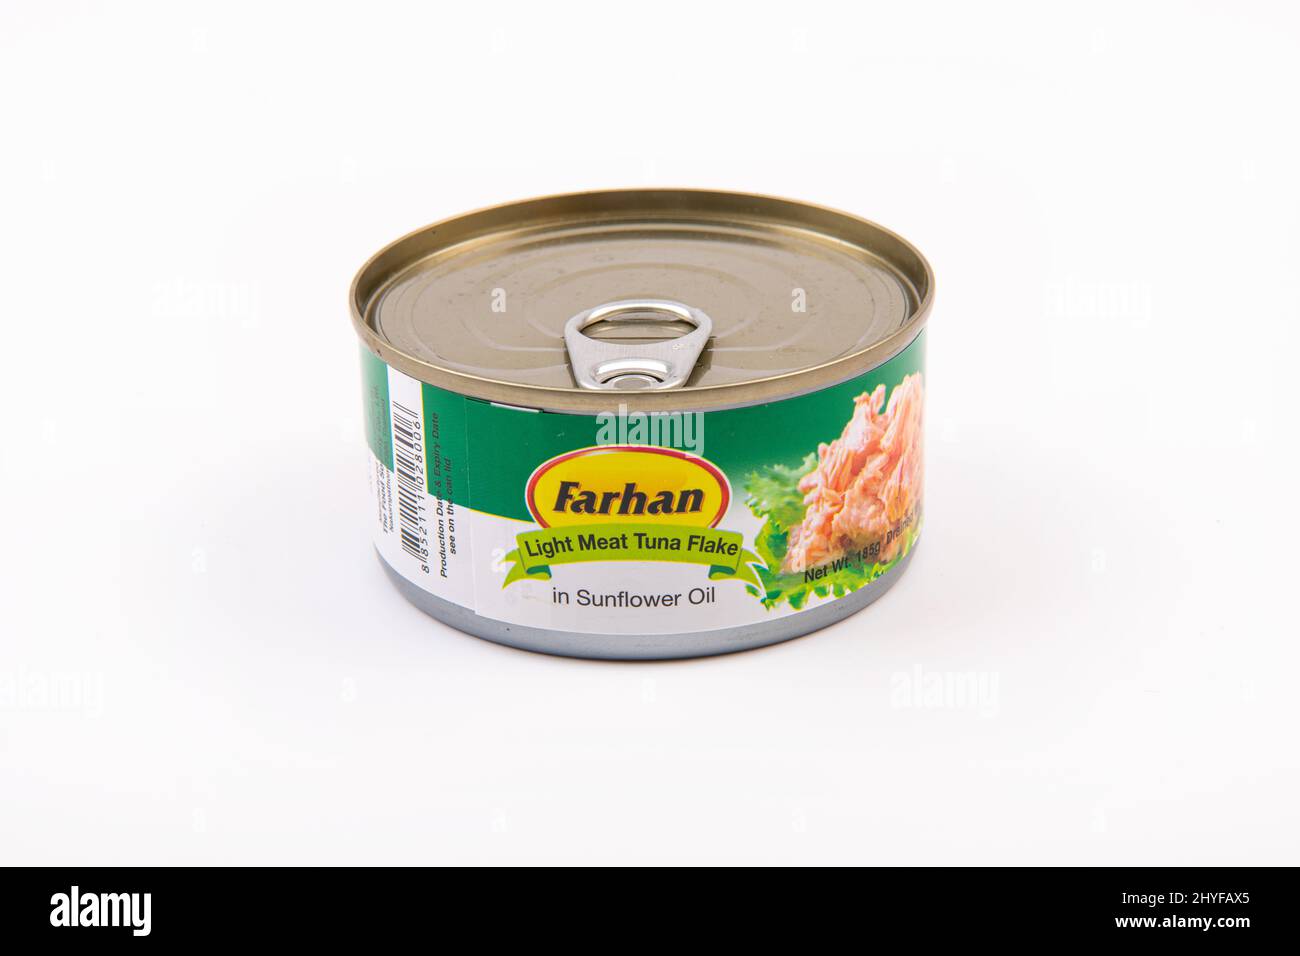 Farhan torta di tonno di carne leggera in olio di girasole, 185 g in scatola su sfondo bianco Foto Stock